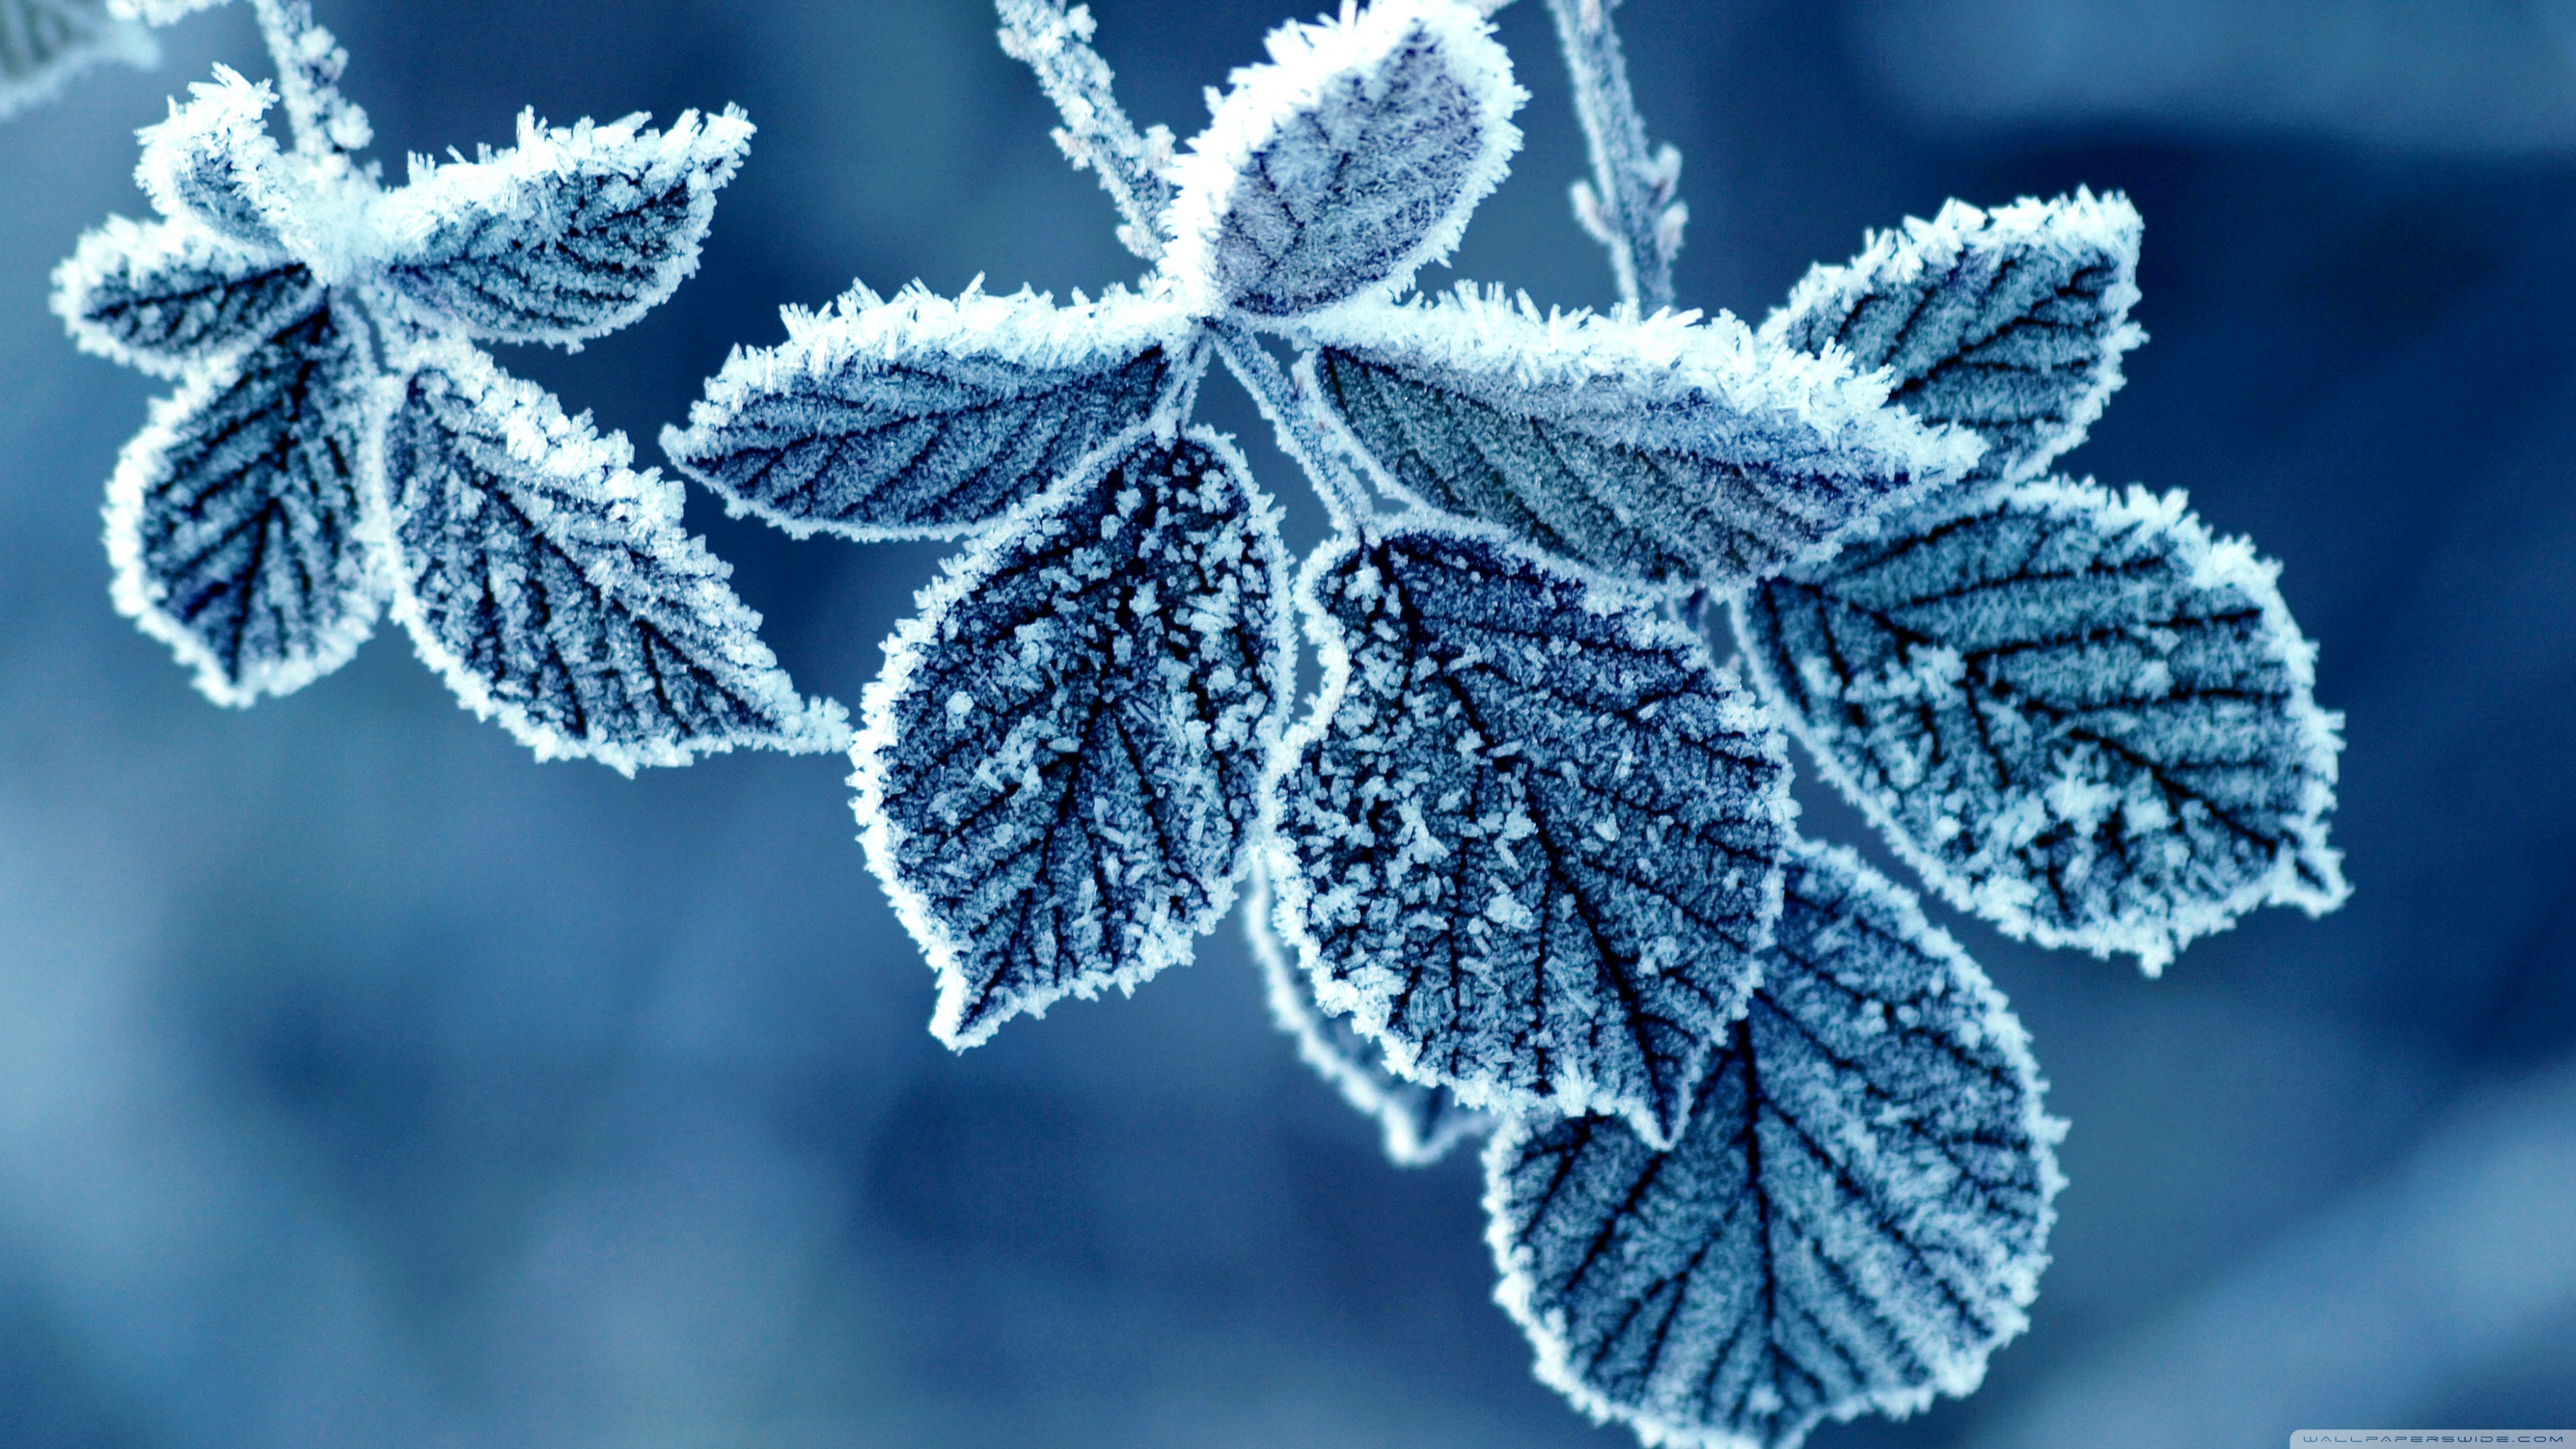 Frozen Leaves ❤ 4K HD Desktop Wallpaper for 4K Ultra HD TV • Wide ...